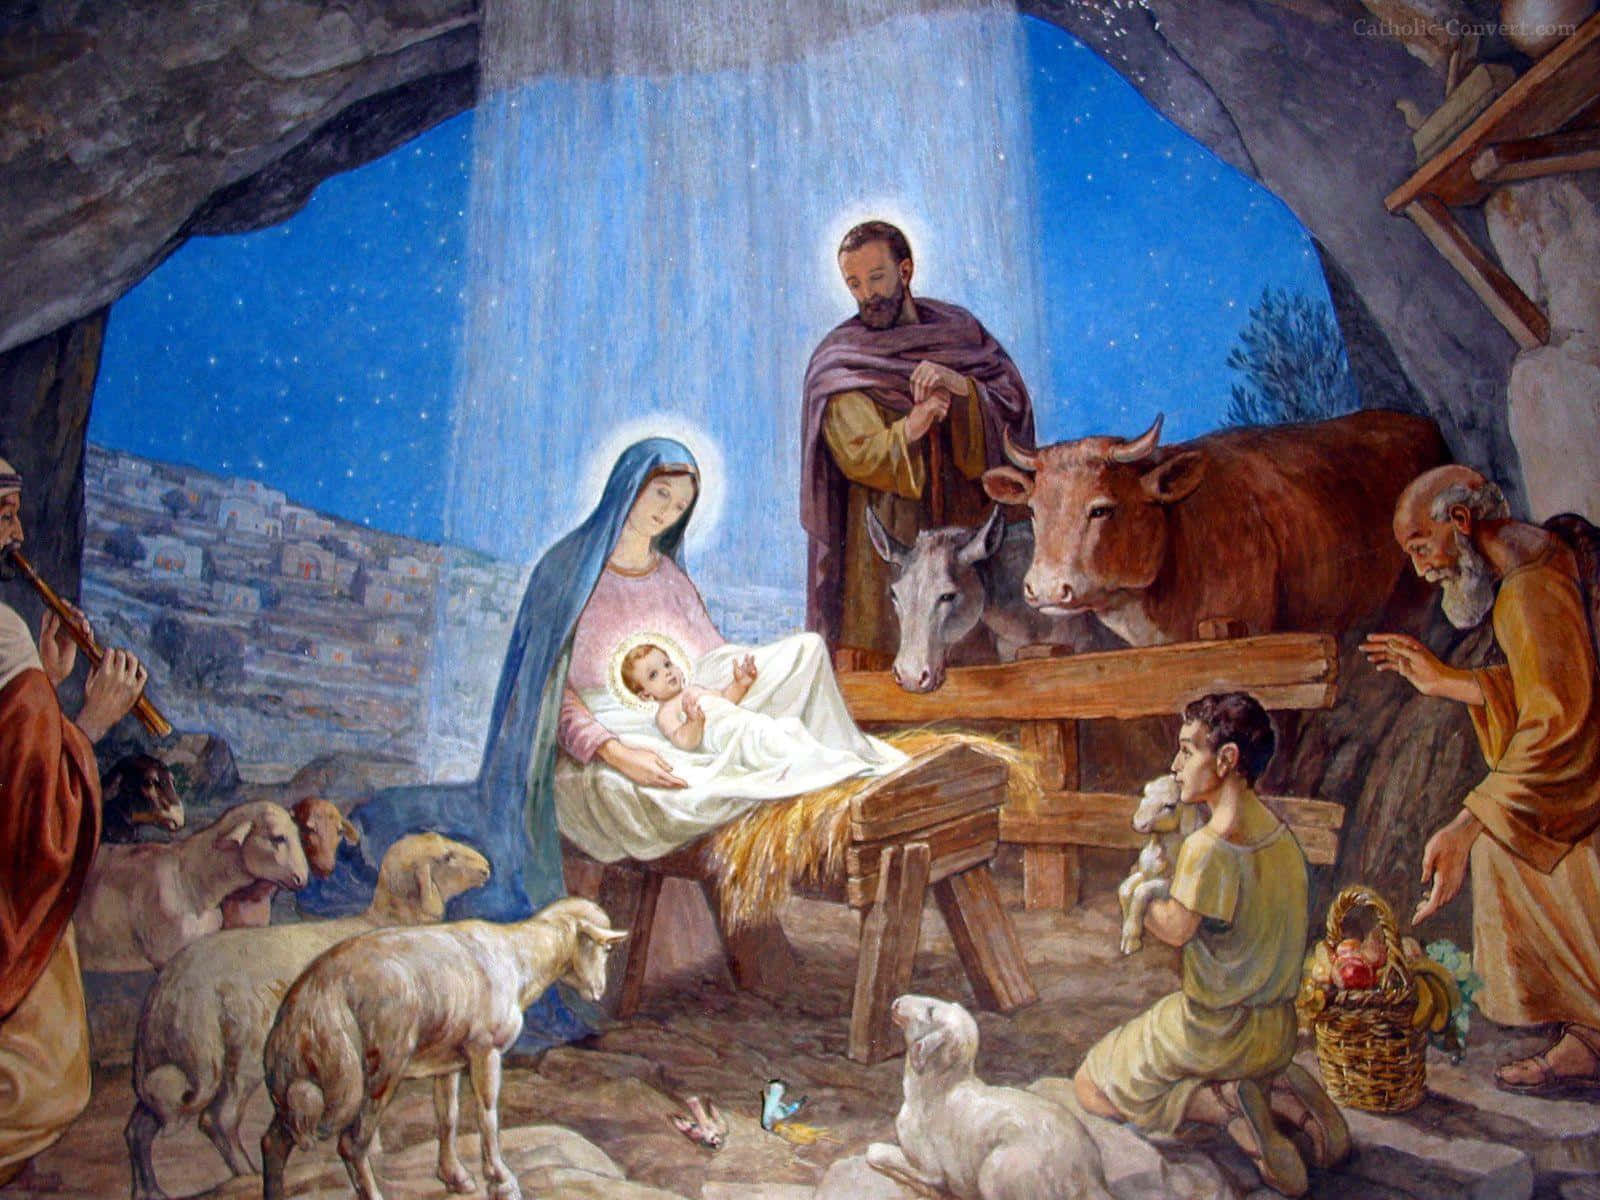 Celebrala Natività Di Gesù Con Questo Bellissimo Promemoria Della Nascita Del Nostro Salvatore.